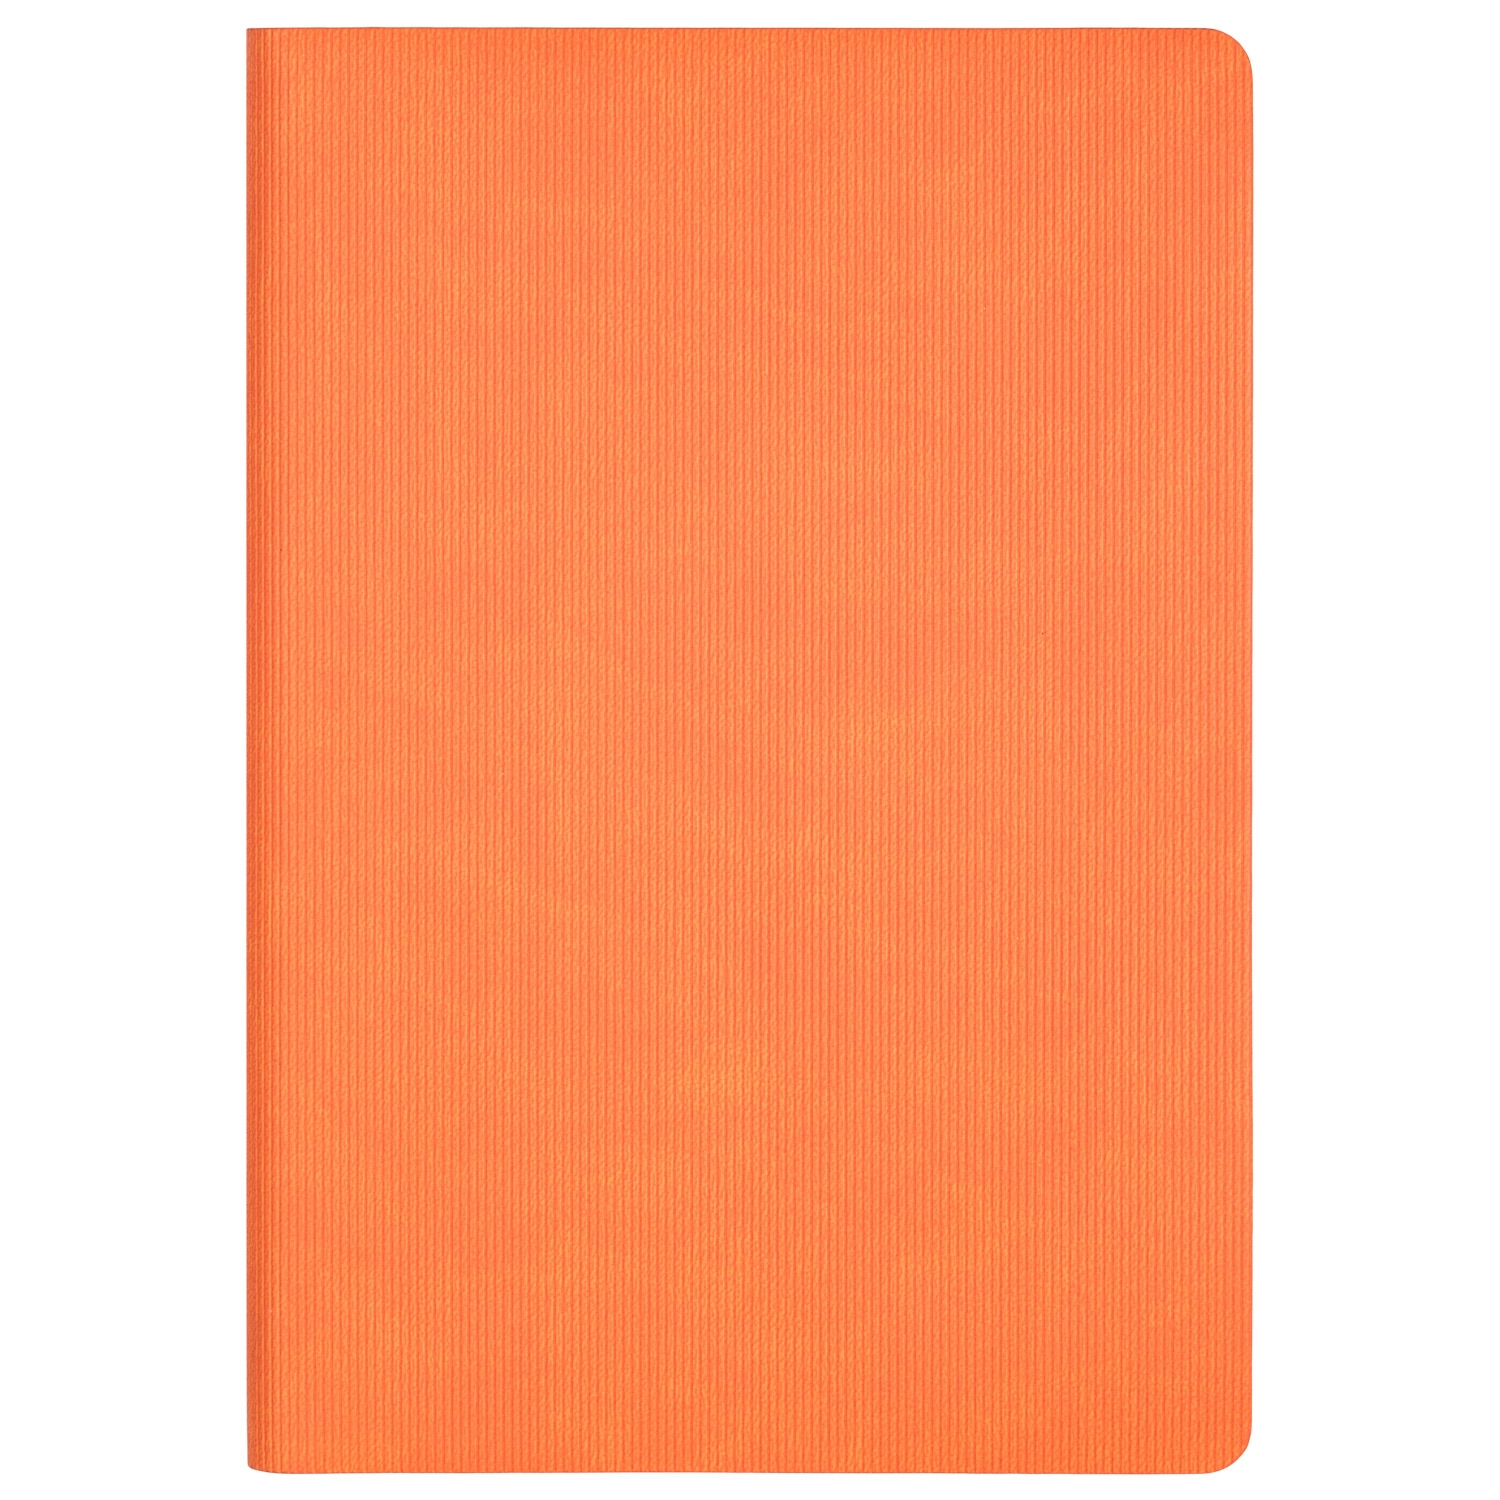 Ежедневник Rain недатированный, оранжевый (без упаковки, без стикера), оранжевый